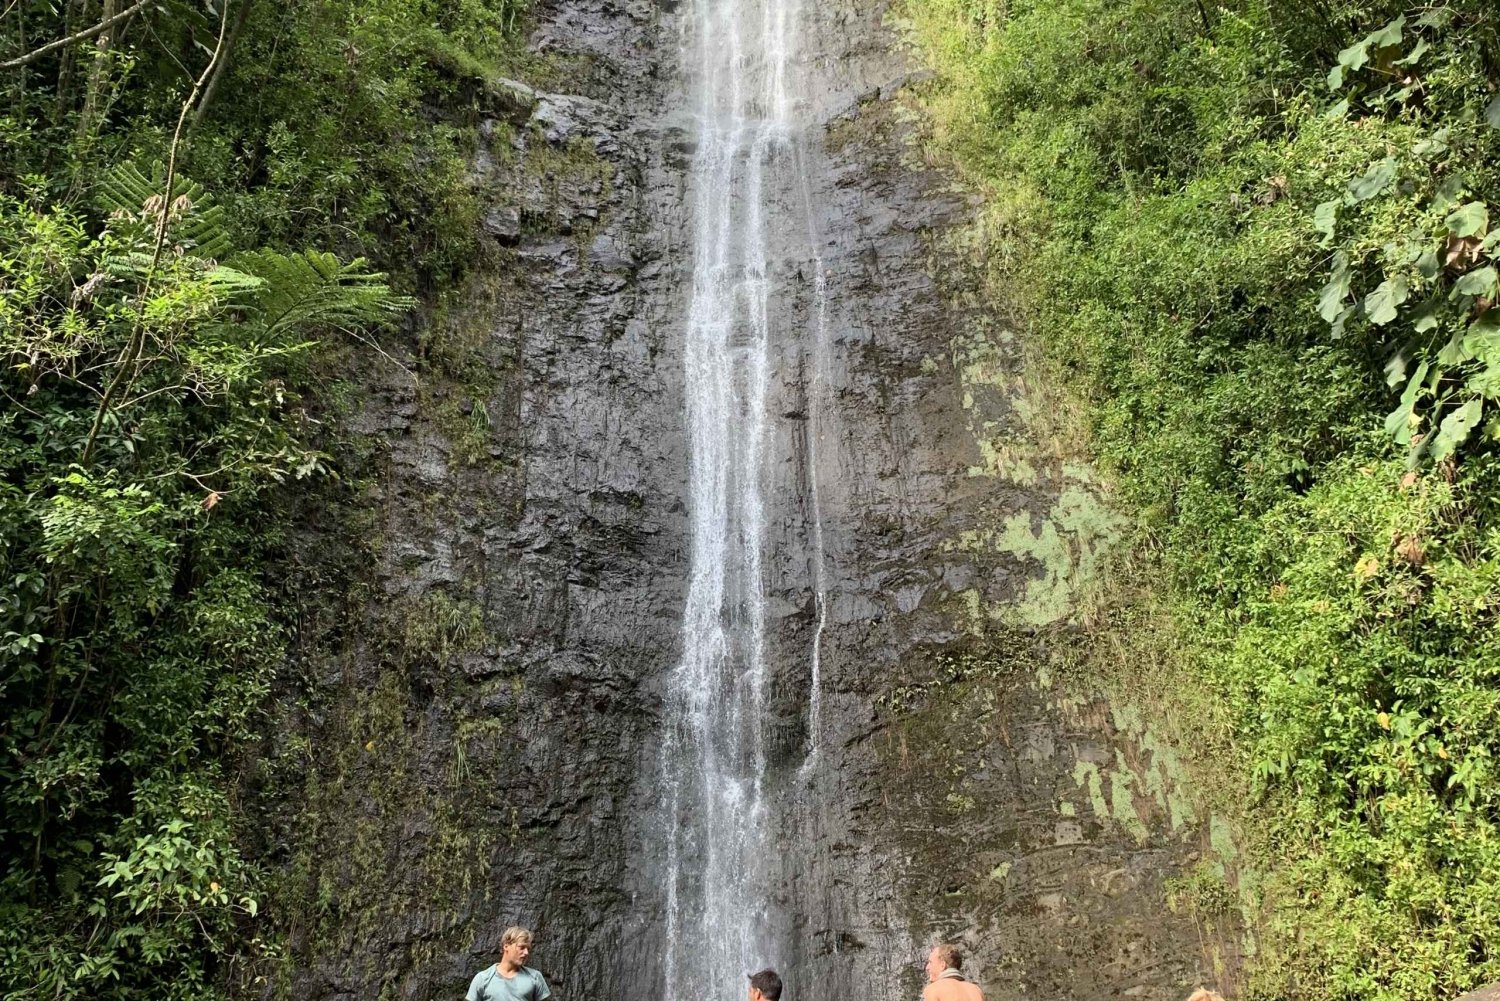 Manoa Falls eBike to Hike